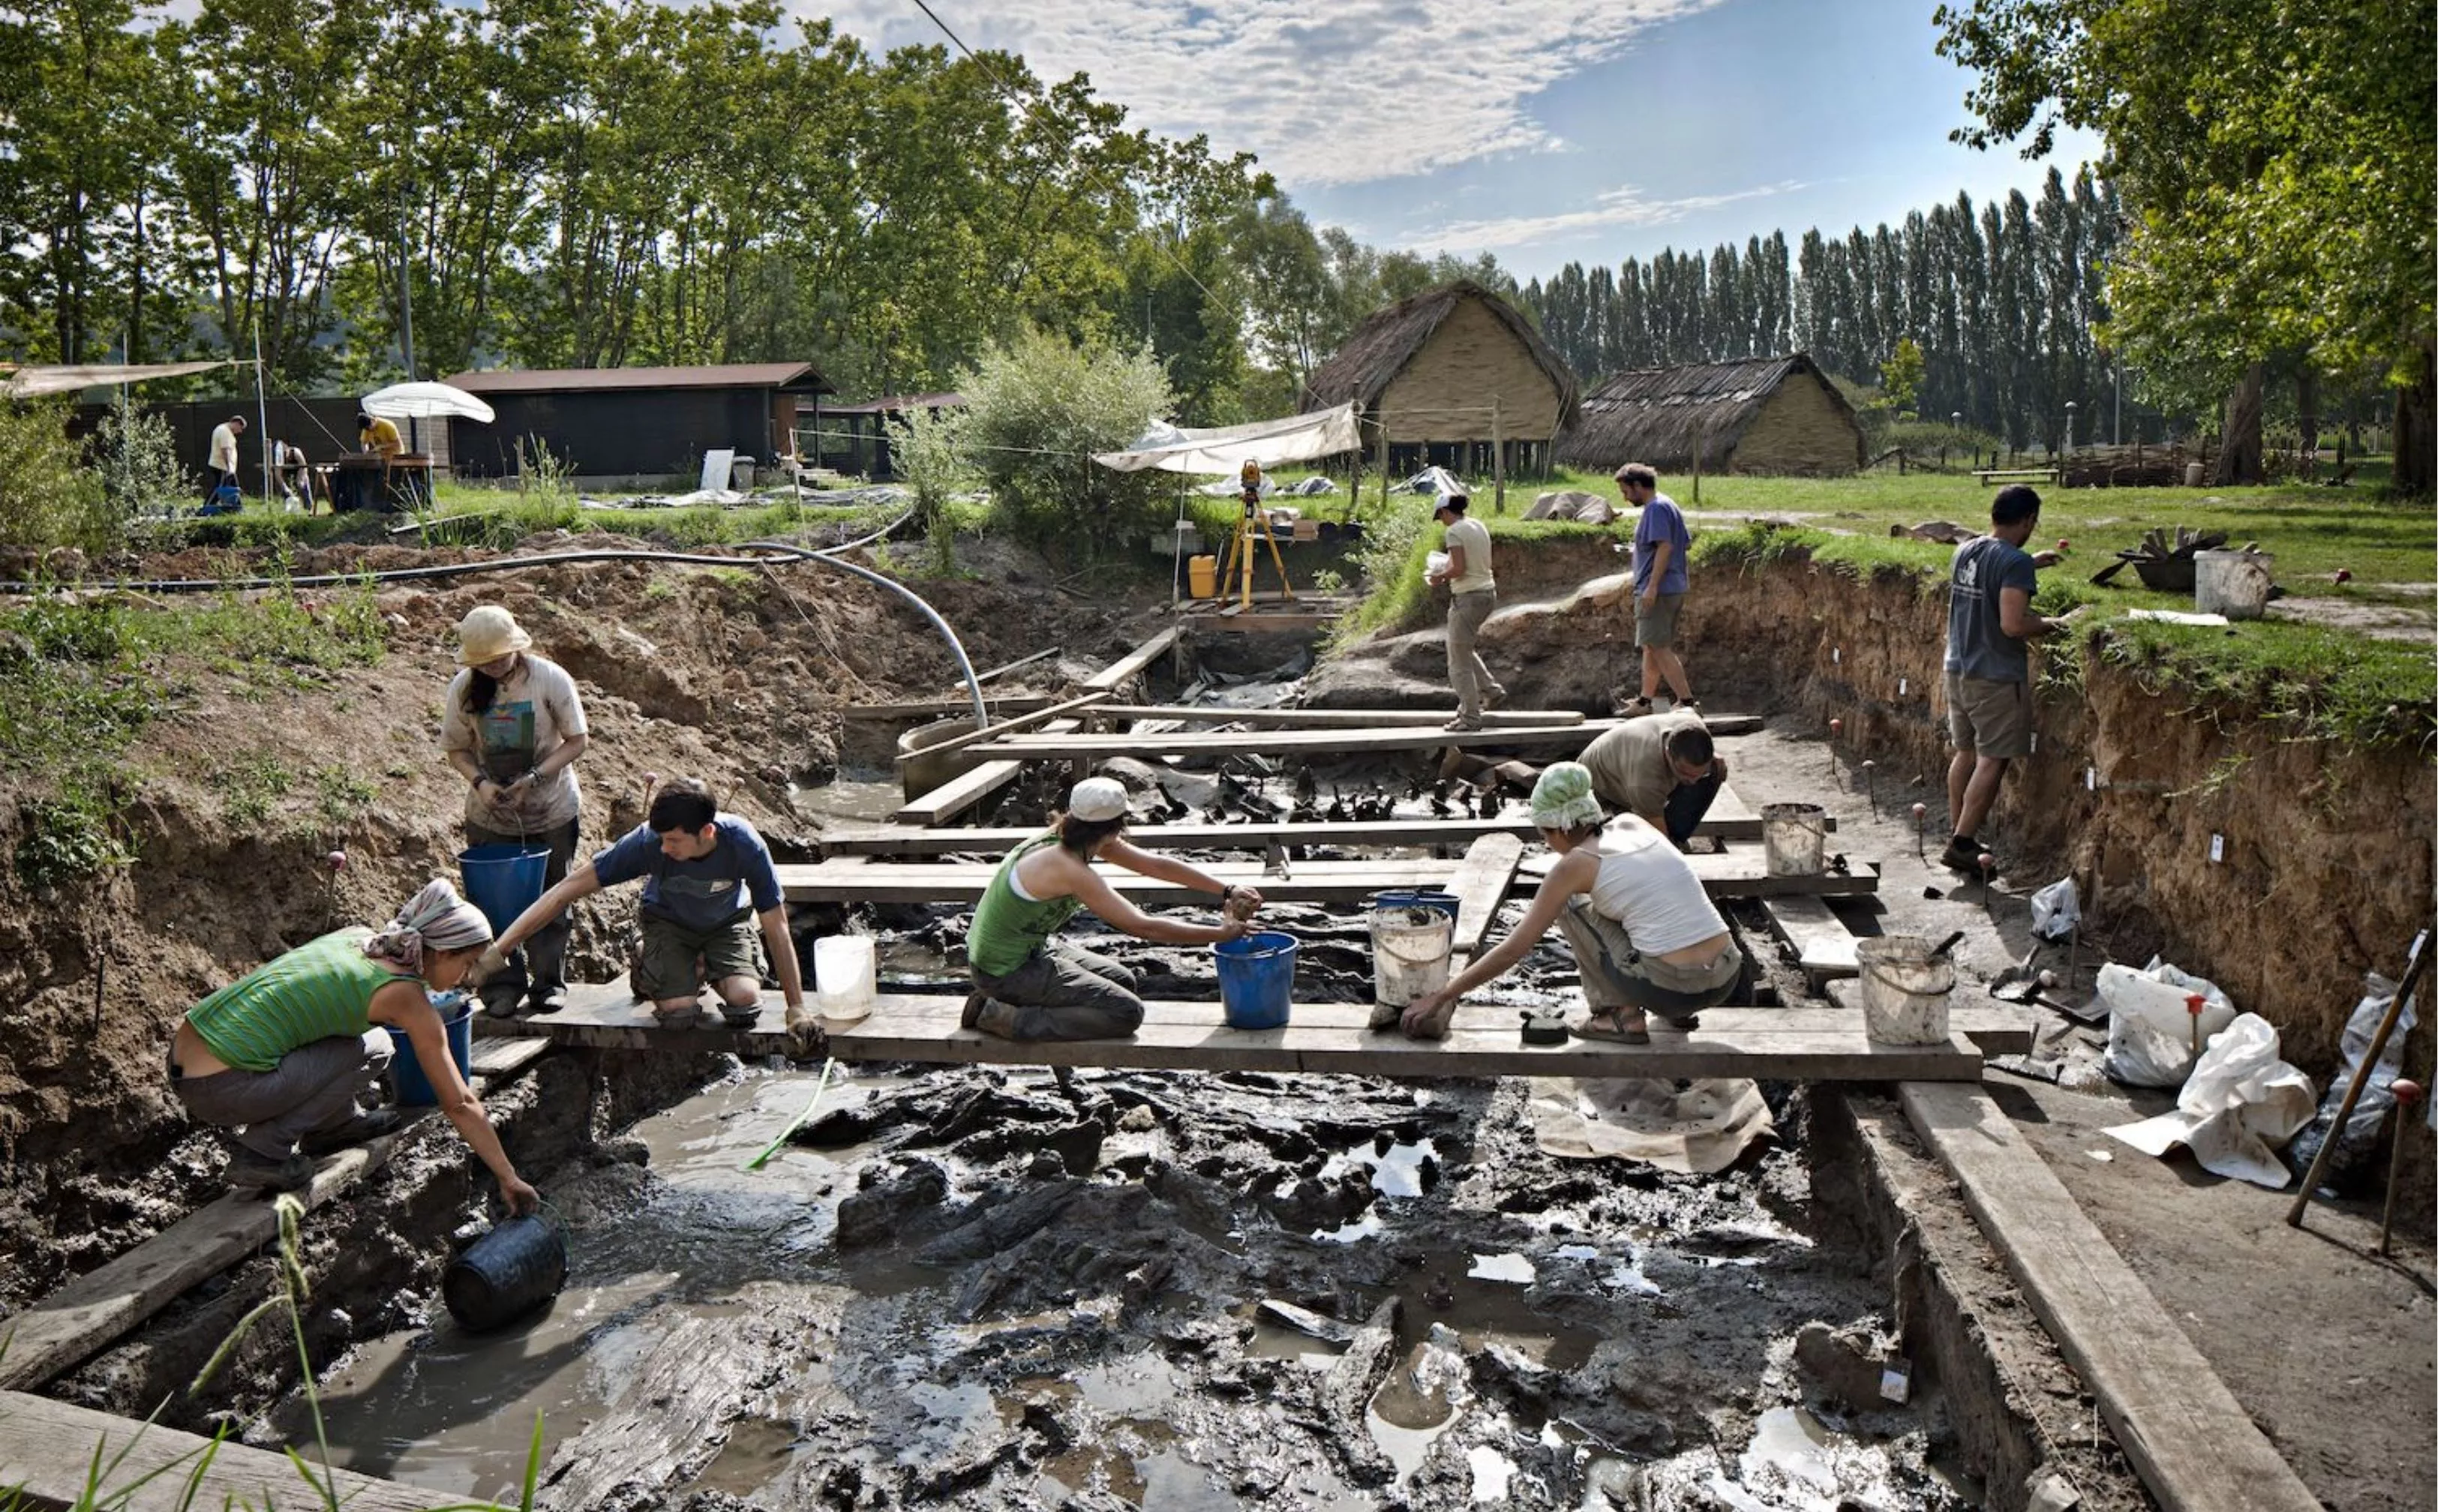 La zona actual d’excavació és un rectangle d’uns 50 m2. L’aigua es filtra de l’estany i obliga a treballar sobre llistons